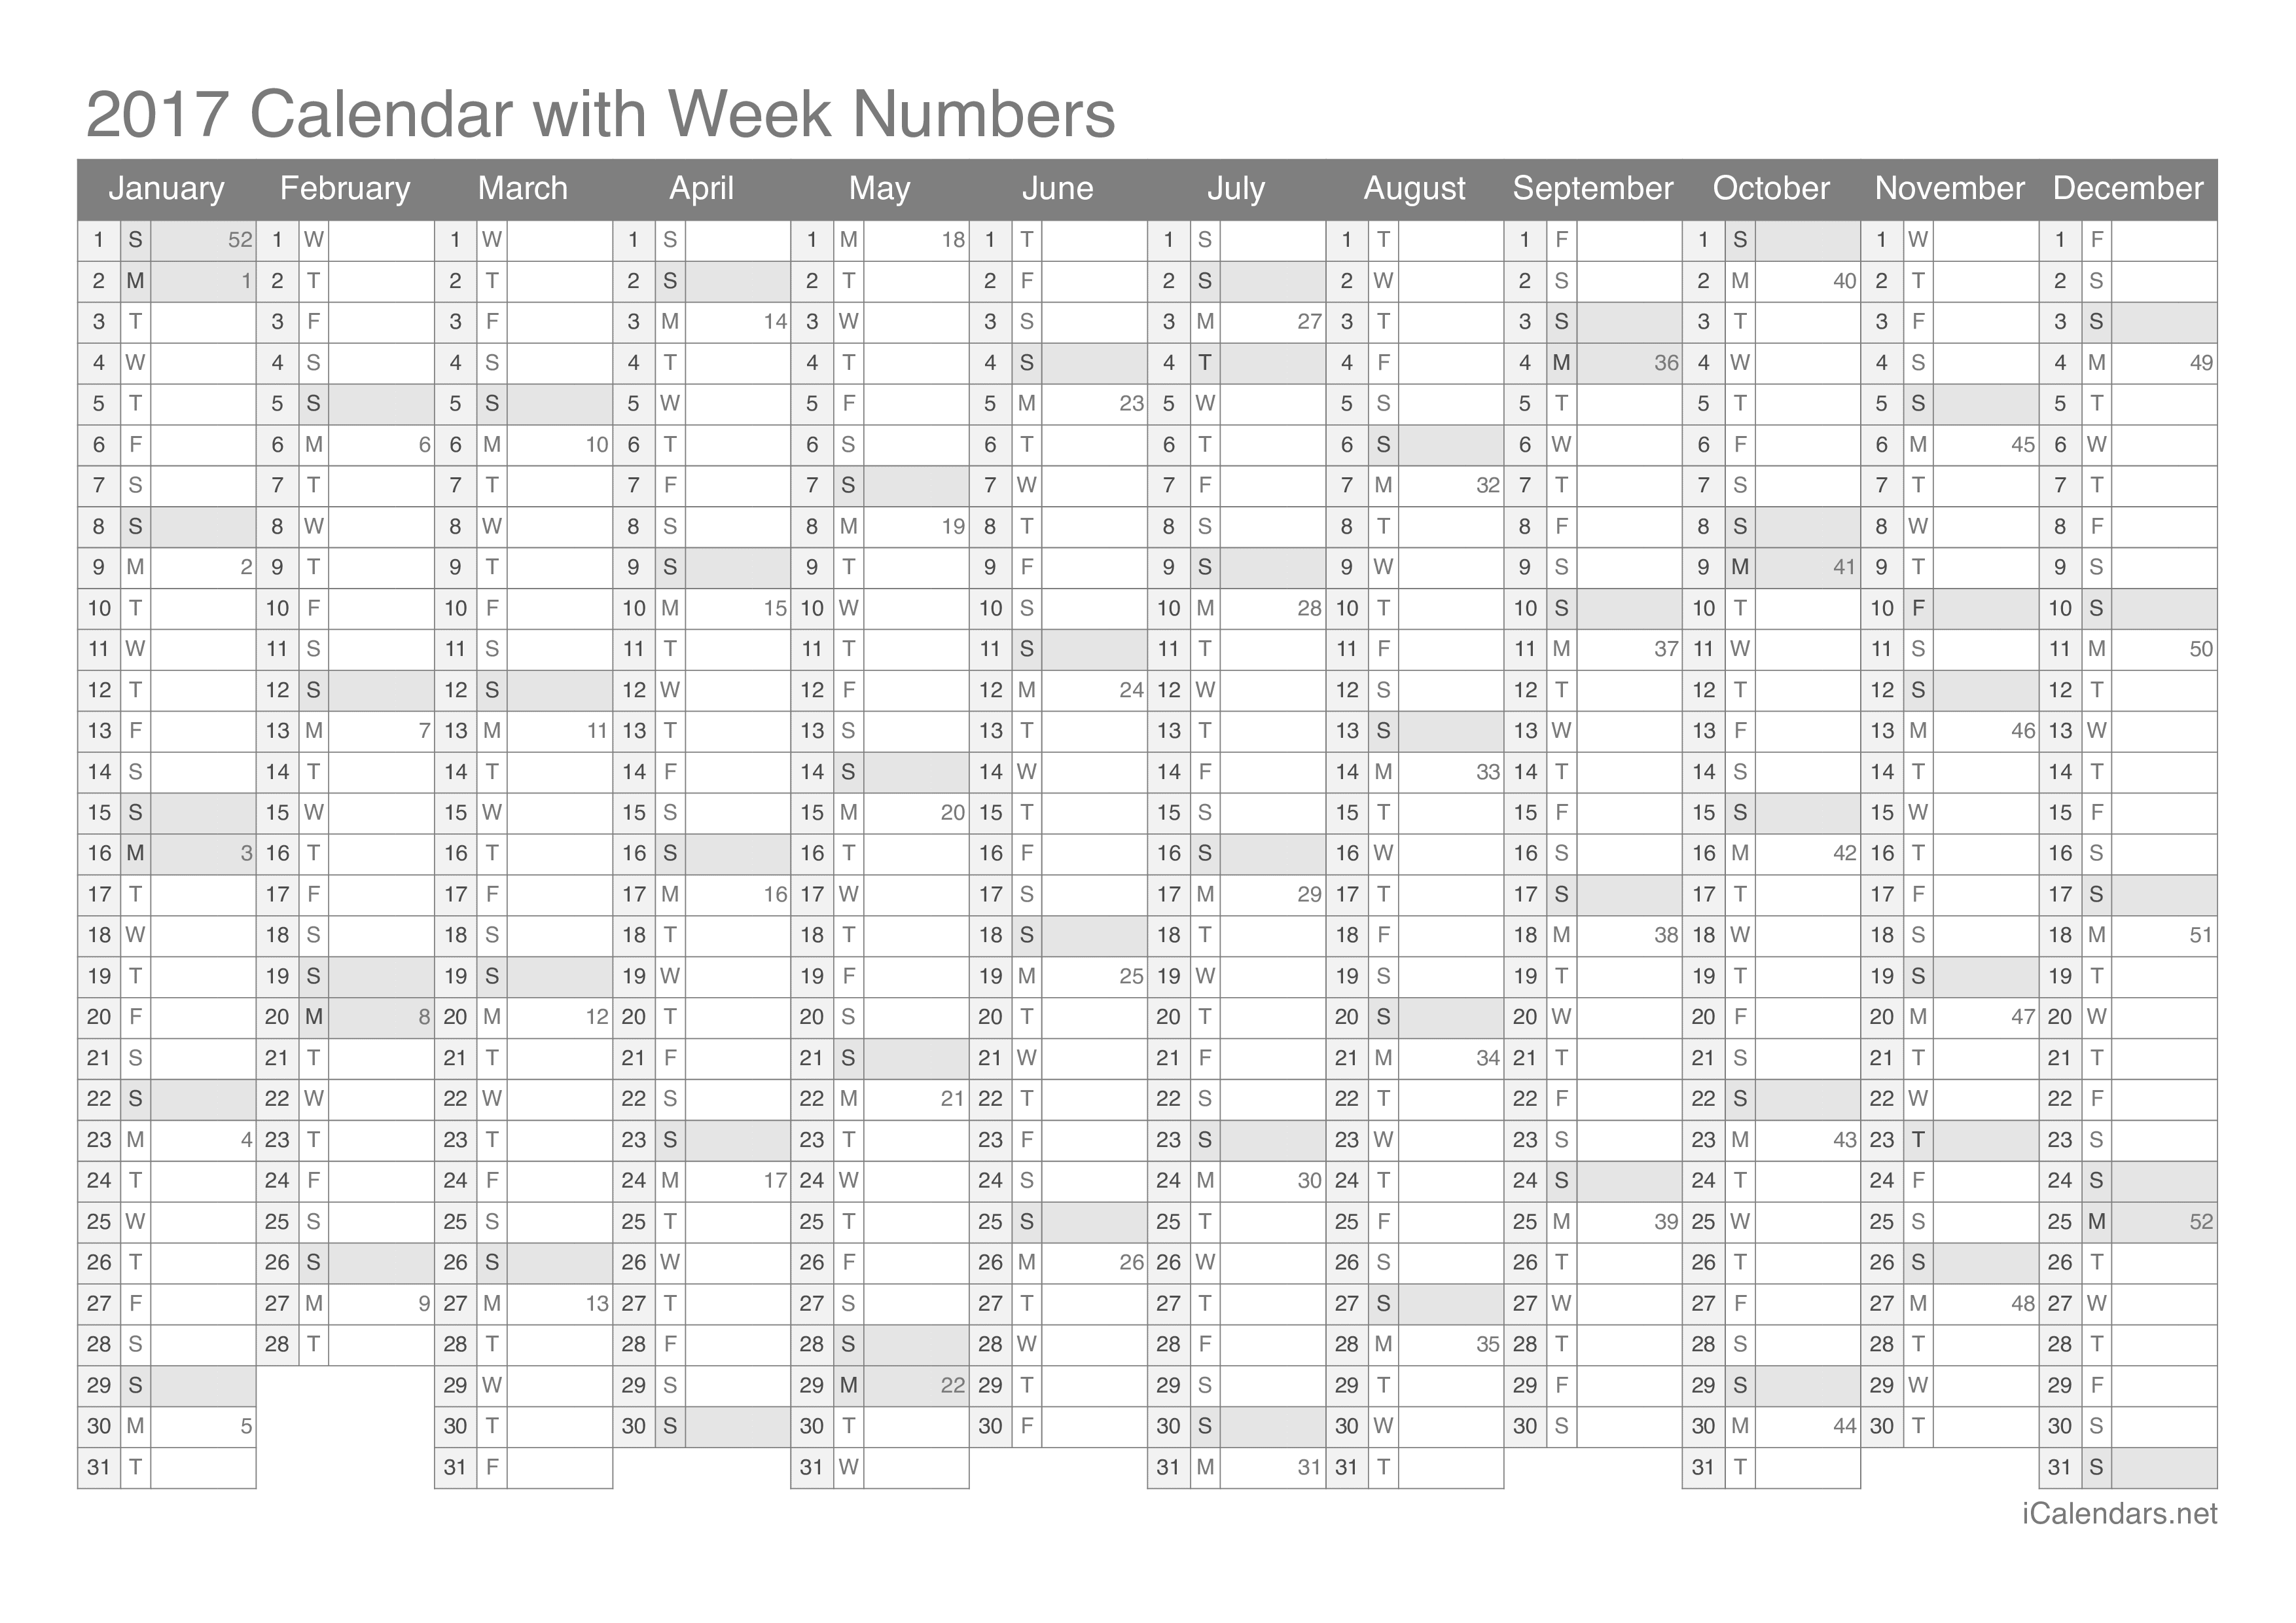 2017 Calendar with week numbers